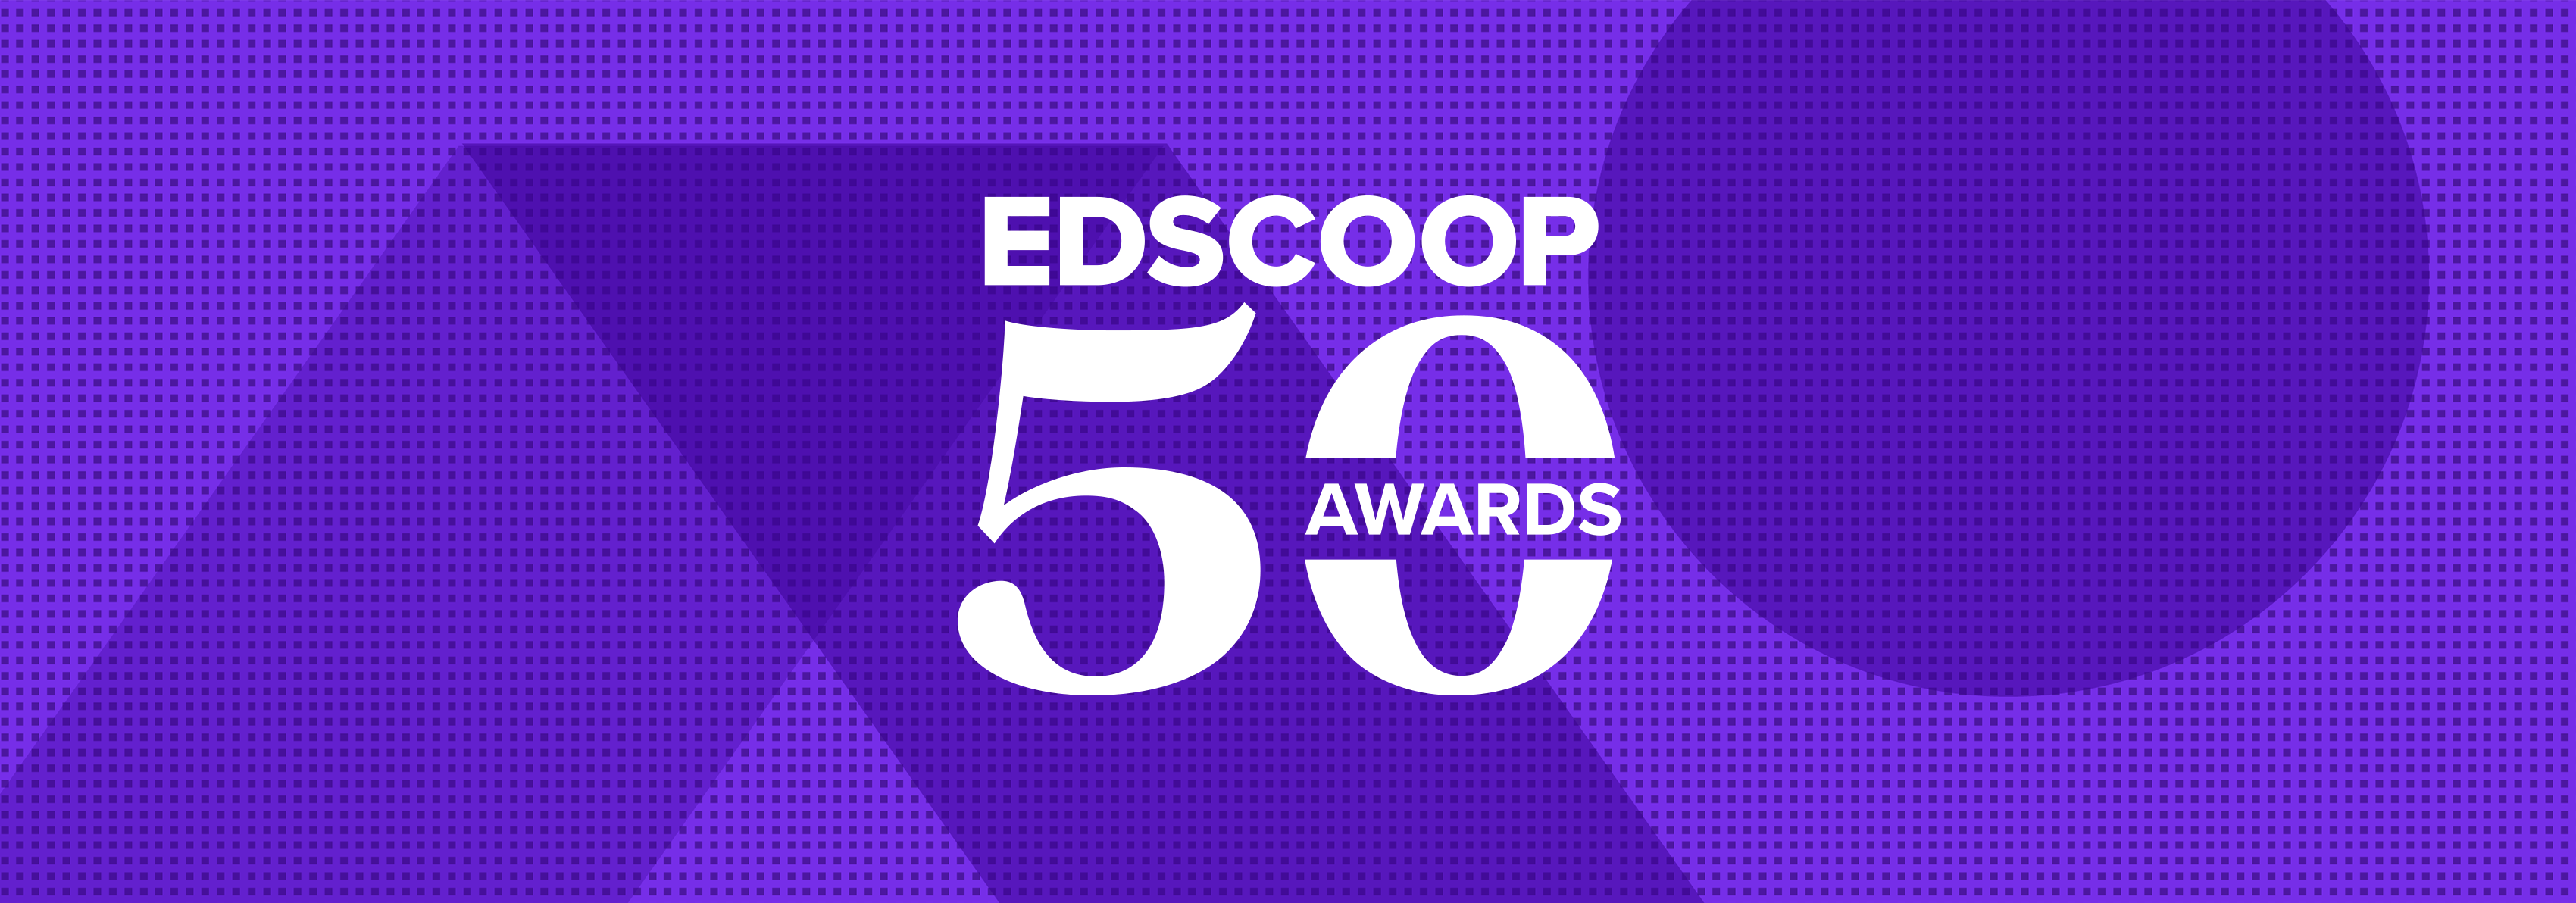 EdScoop 50 Awards